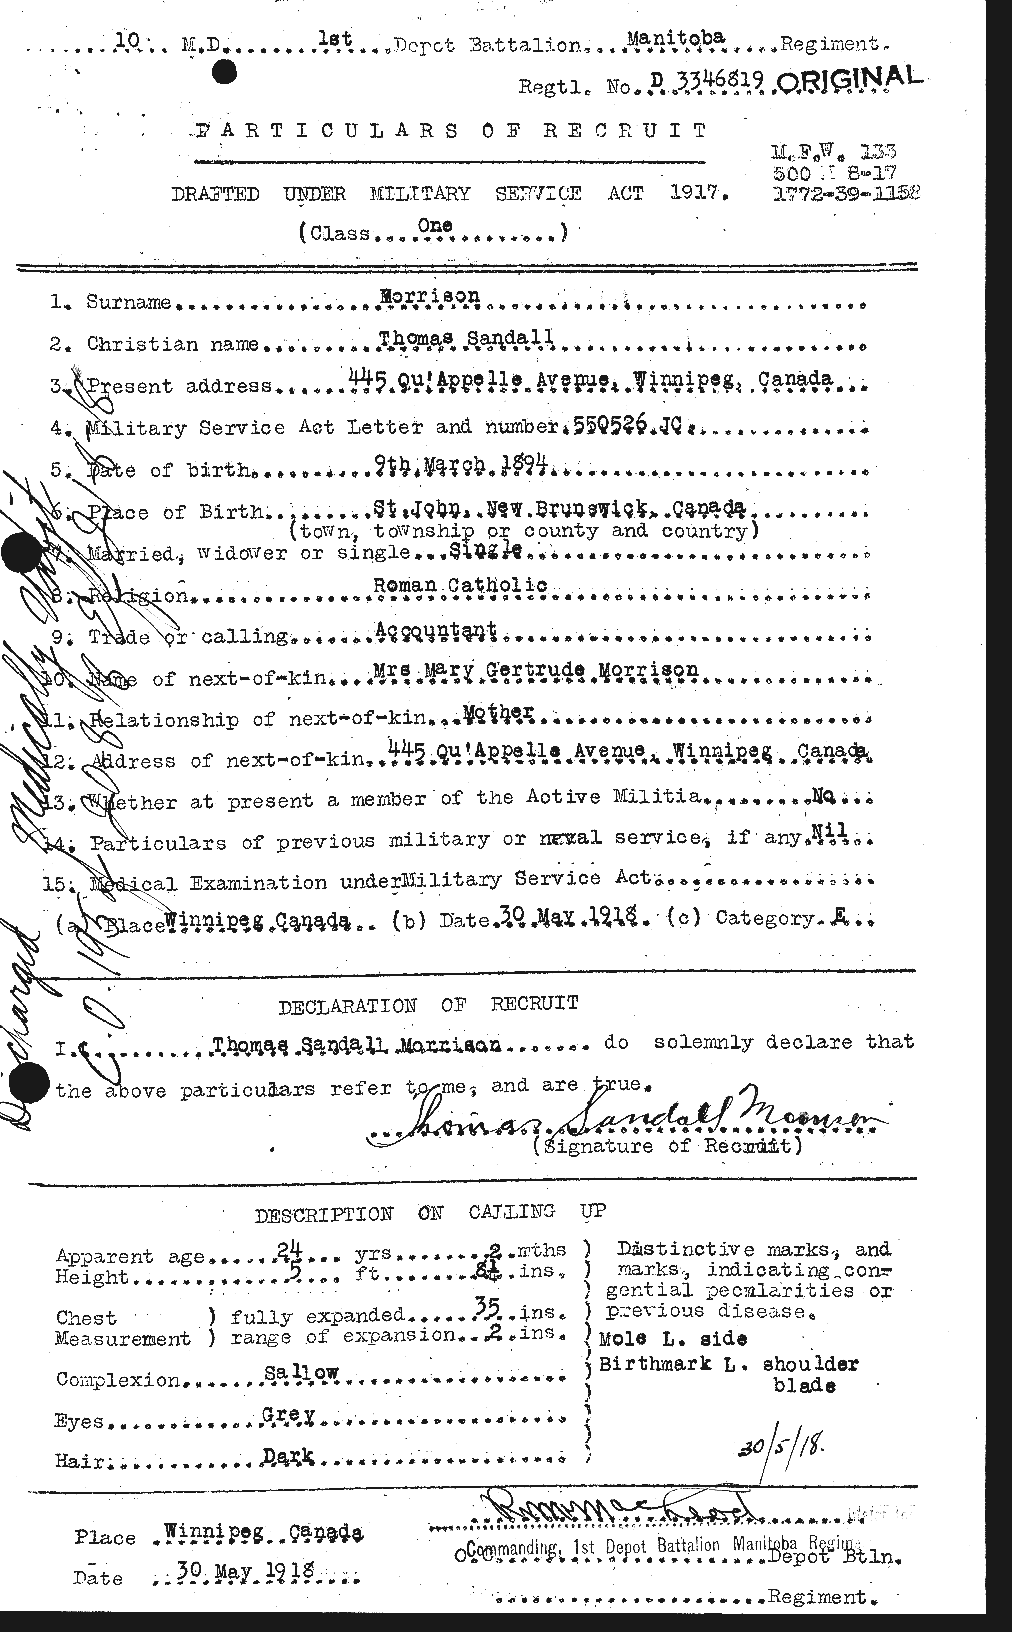 Dossiers du Personnel de la Première Guerre mondiale - CEC 509195a